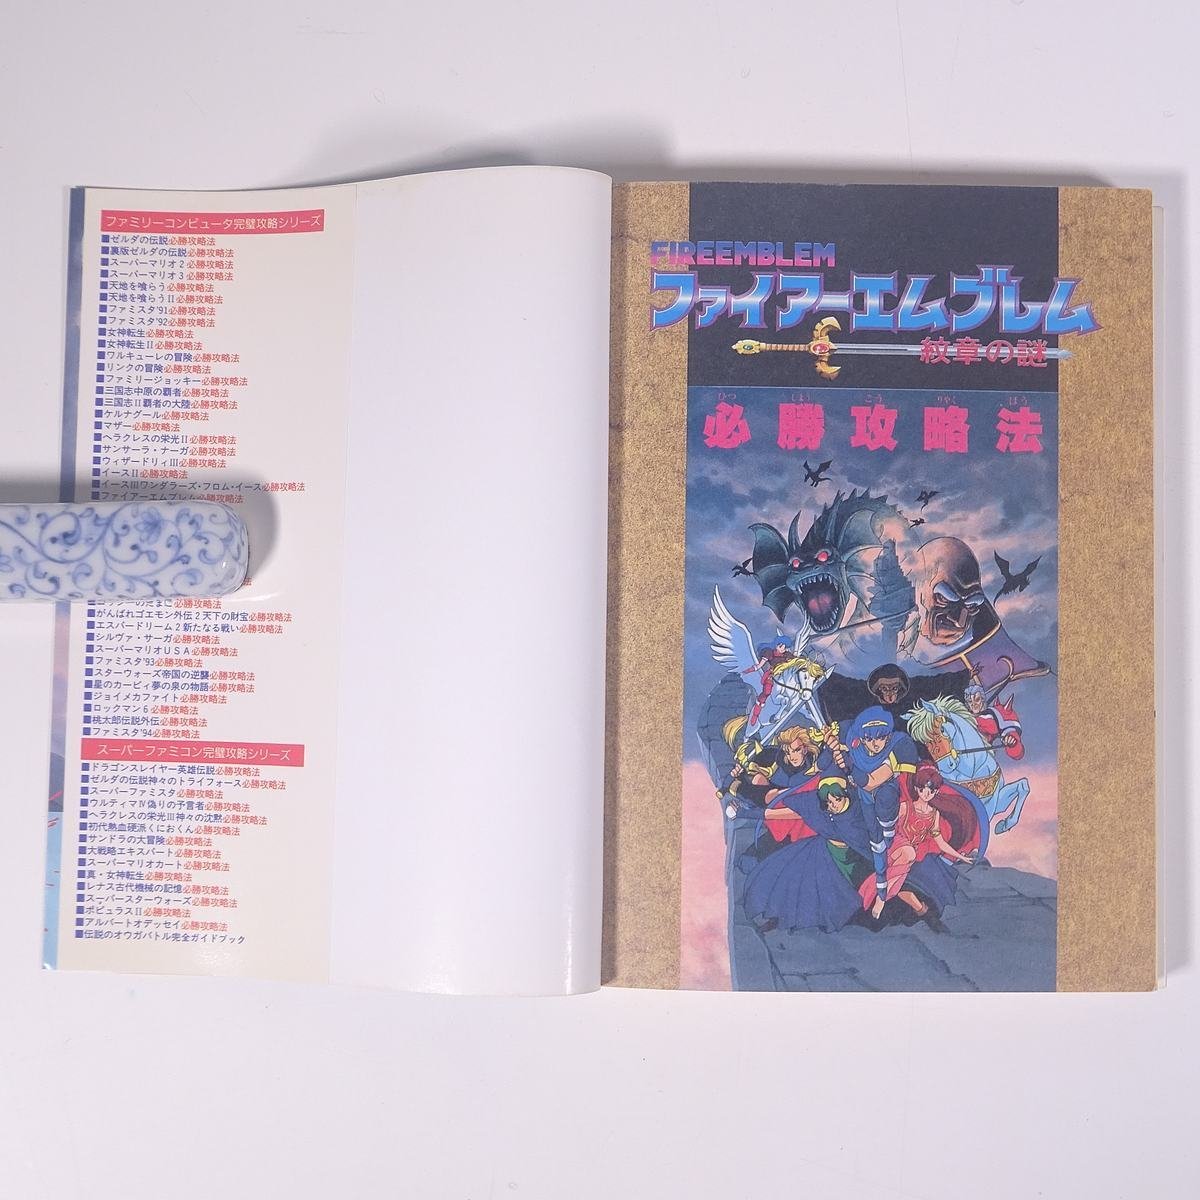 ファイアーエムブレム 紋章の謎 必勝攻略法 攻略本 双葉社 1994 初版 単行本 ゲーム スーパーファミコン SFC_画像5